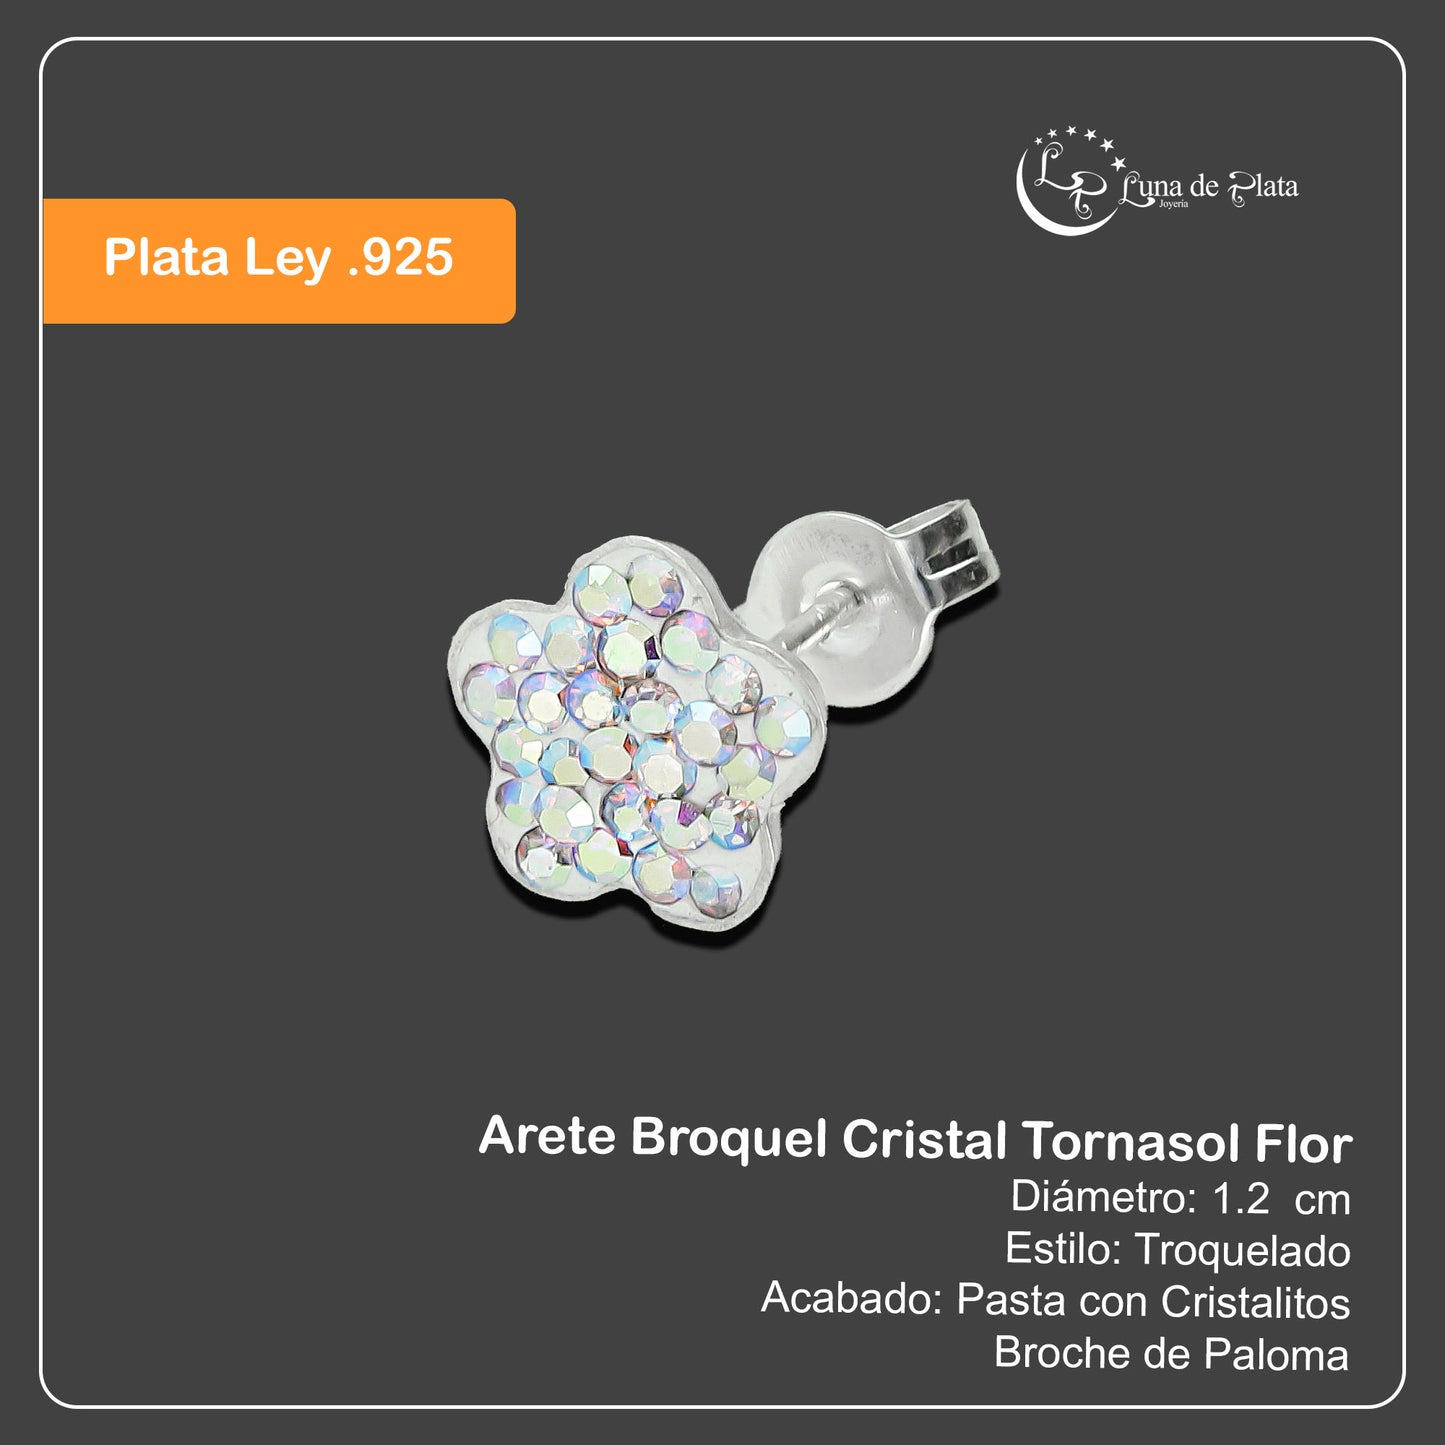 LPAP020 Arete Broquel Cristal Tornasol Flor Plata Ley .925 Taxco 1353247086